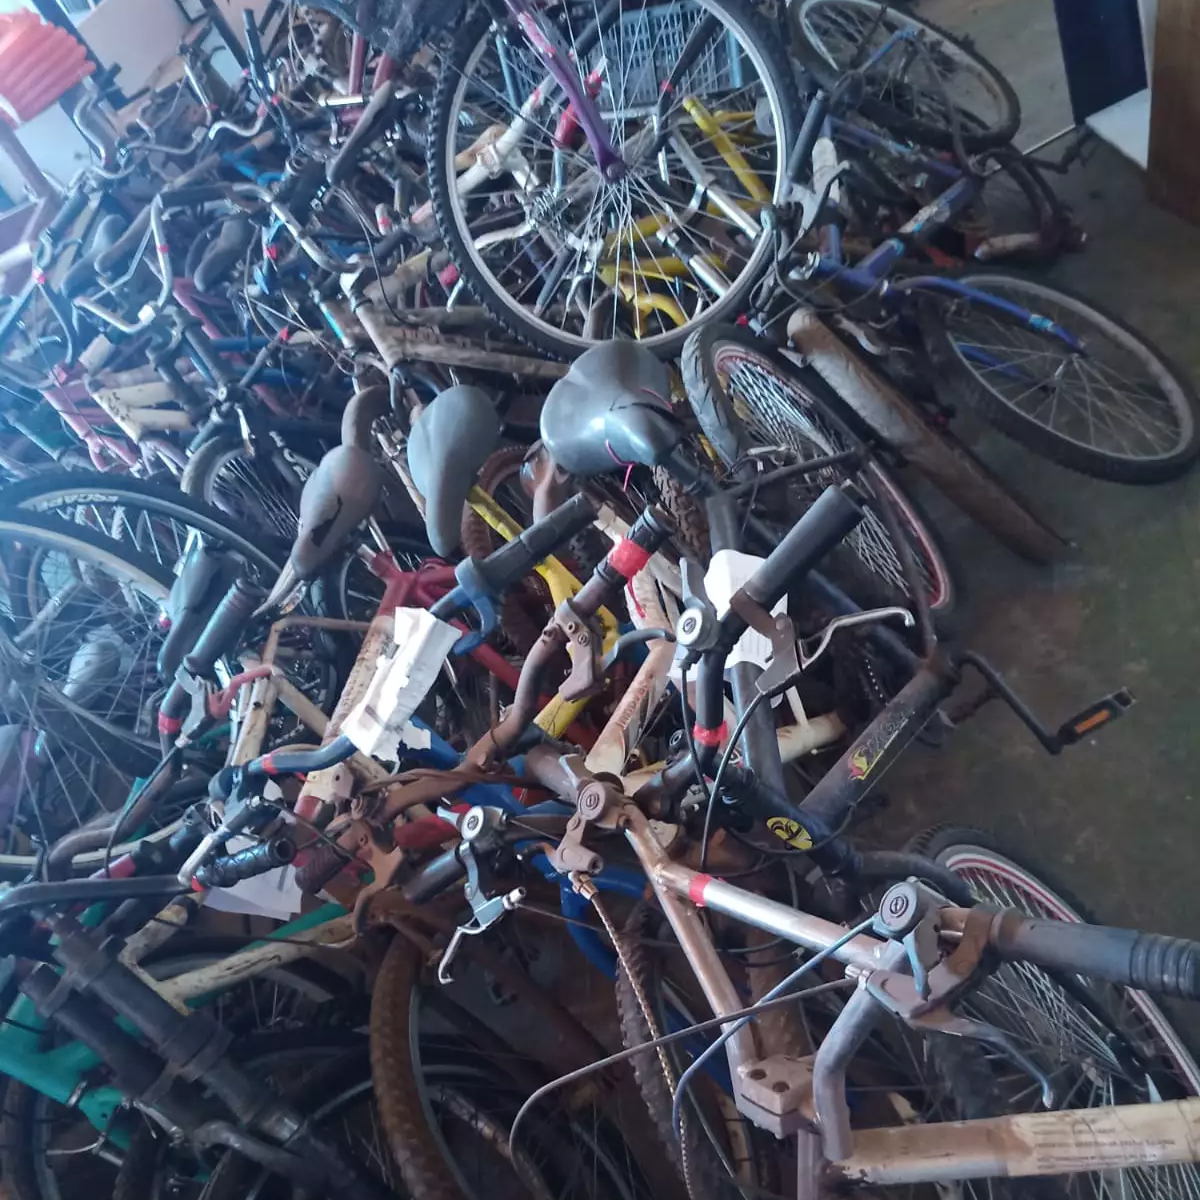 Delegacia convoca donos para retirar 51 bicicletas furtadas em Campo Grande